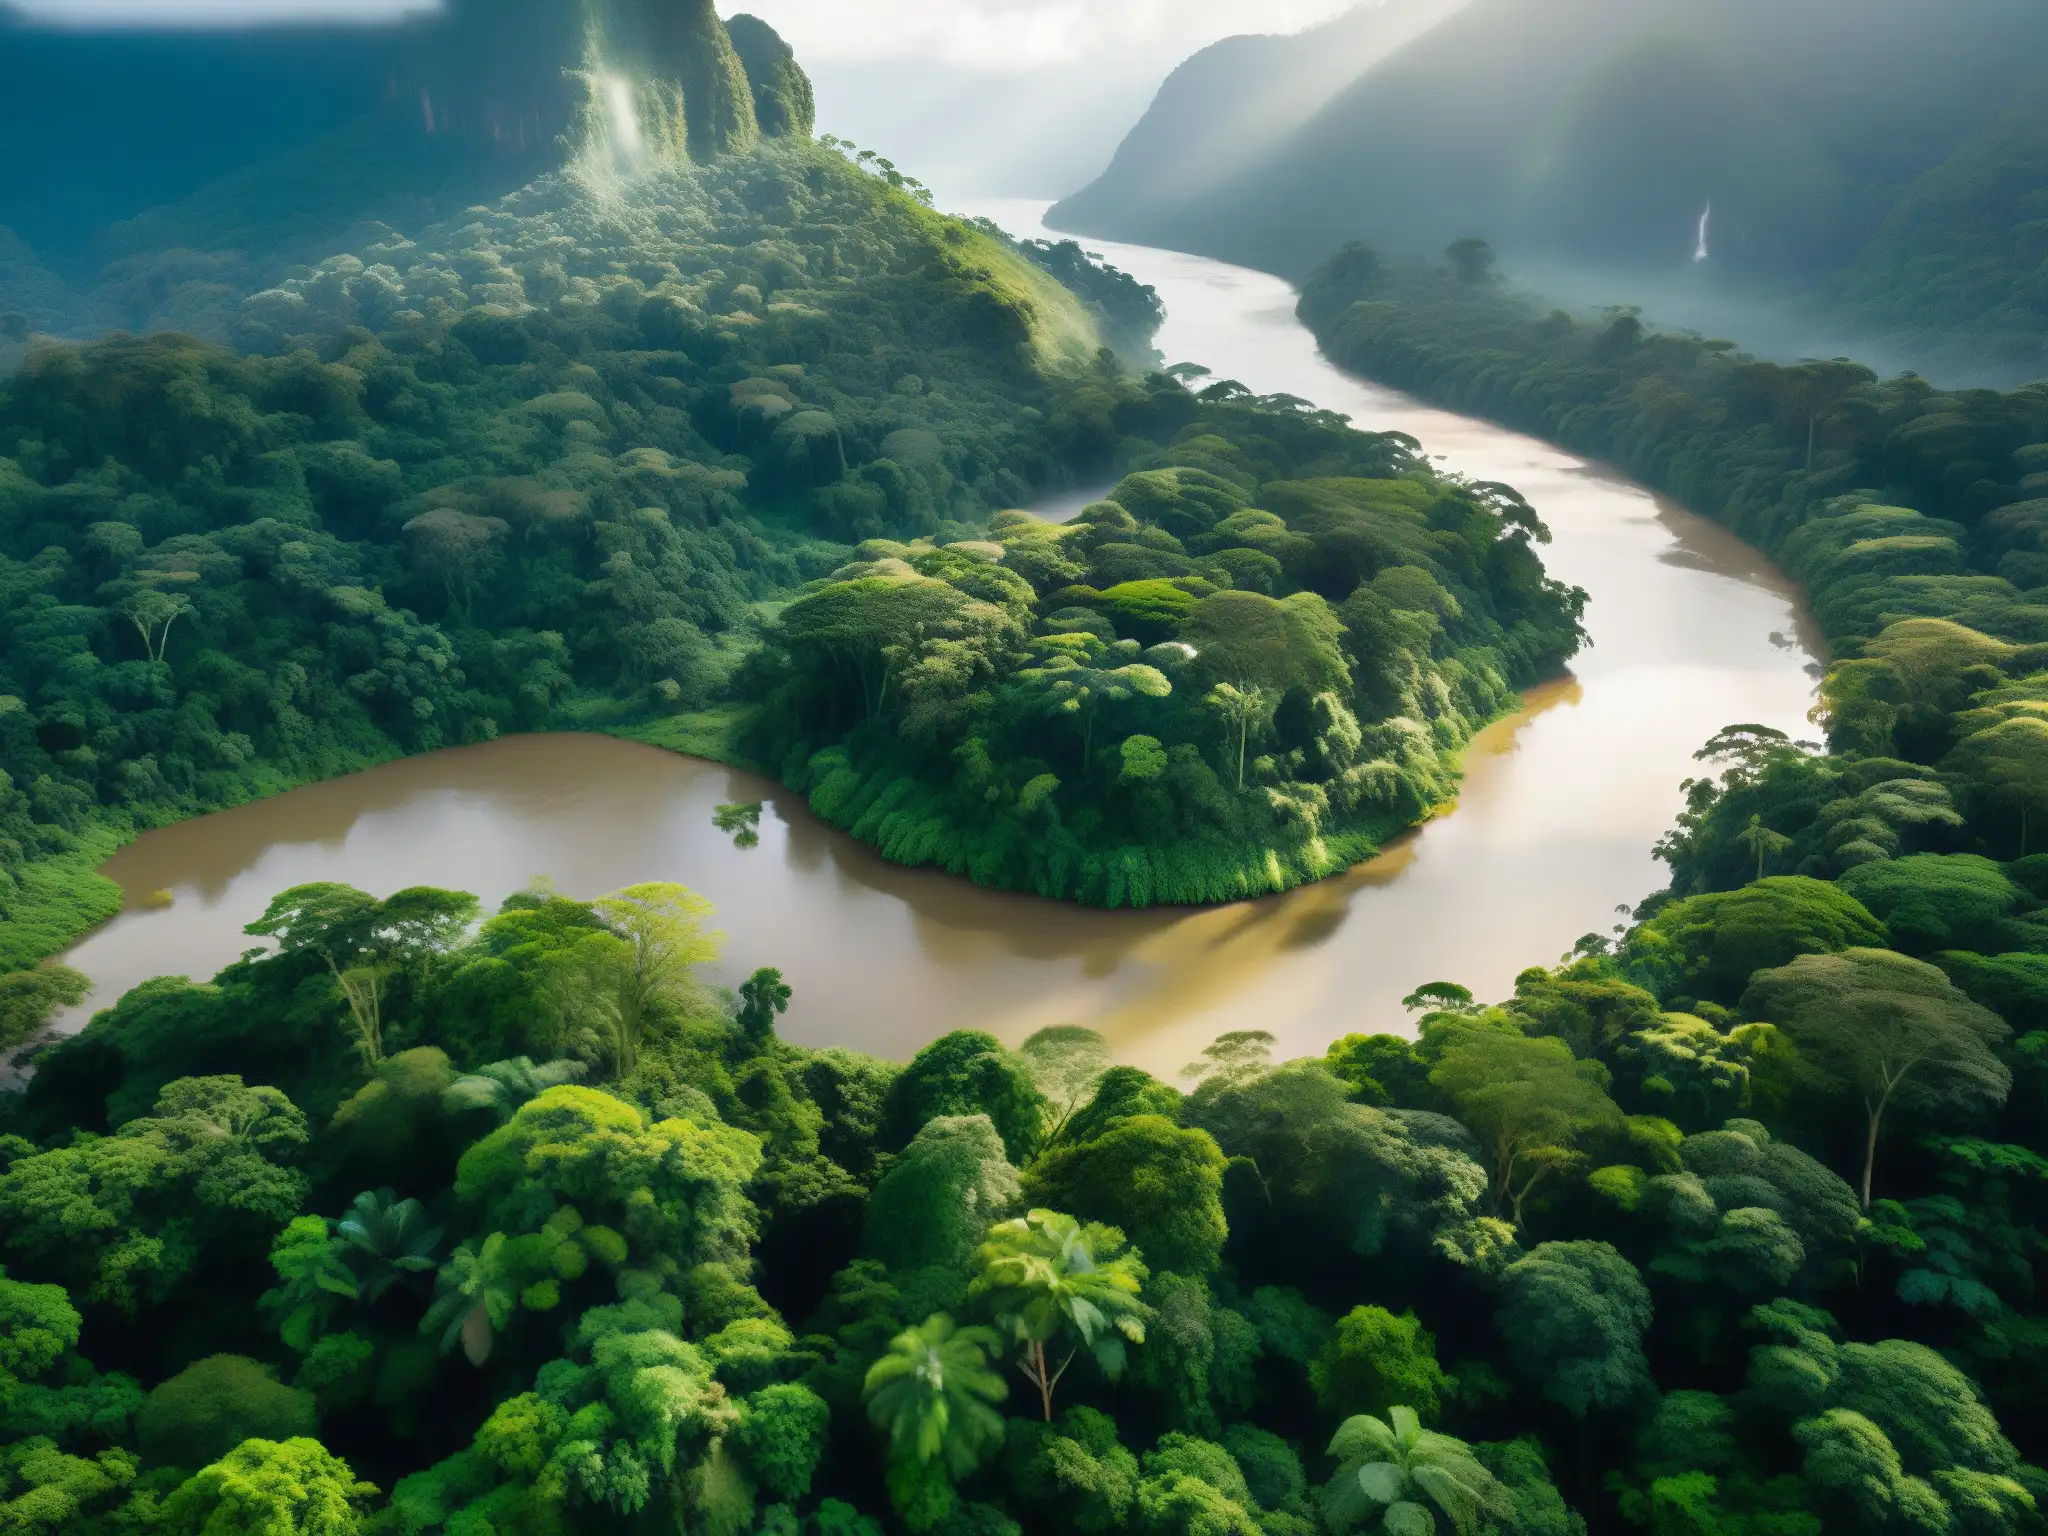 Una misteriosa y encantadora foto del frondoso bosque lluvioso colombiano con el Mohán hechicero en las aguas